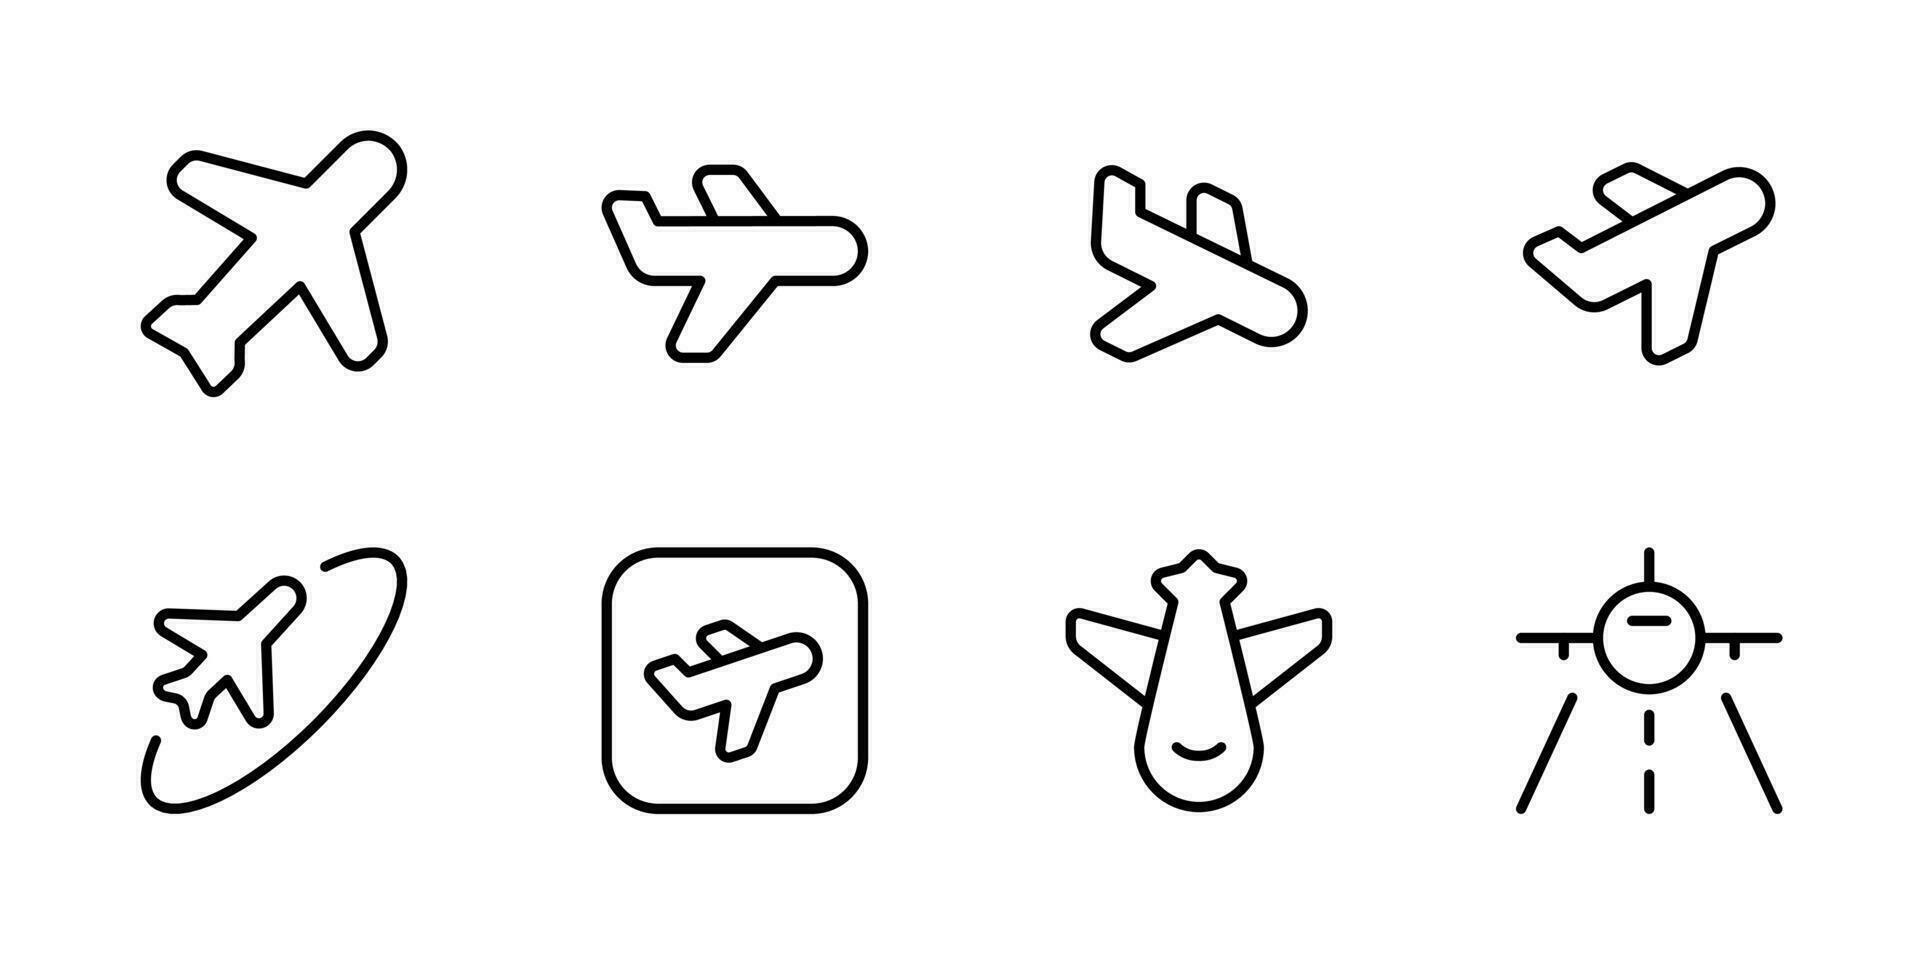 Plane Airplane icon isolated on white background. Aeroplane vector icon. Flight transport symbol. Travel element illustration. Holiday symbol.